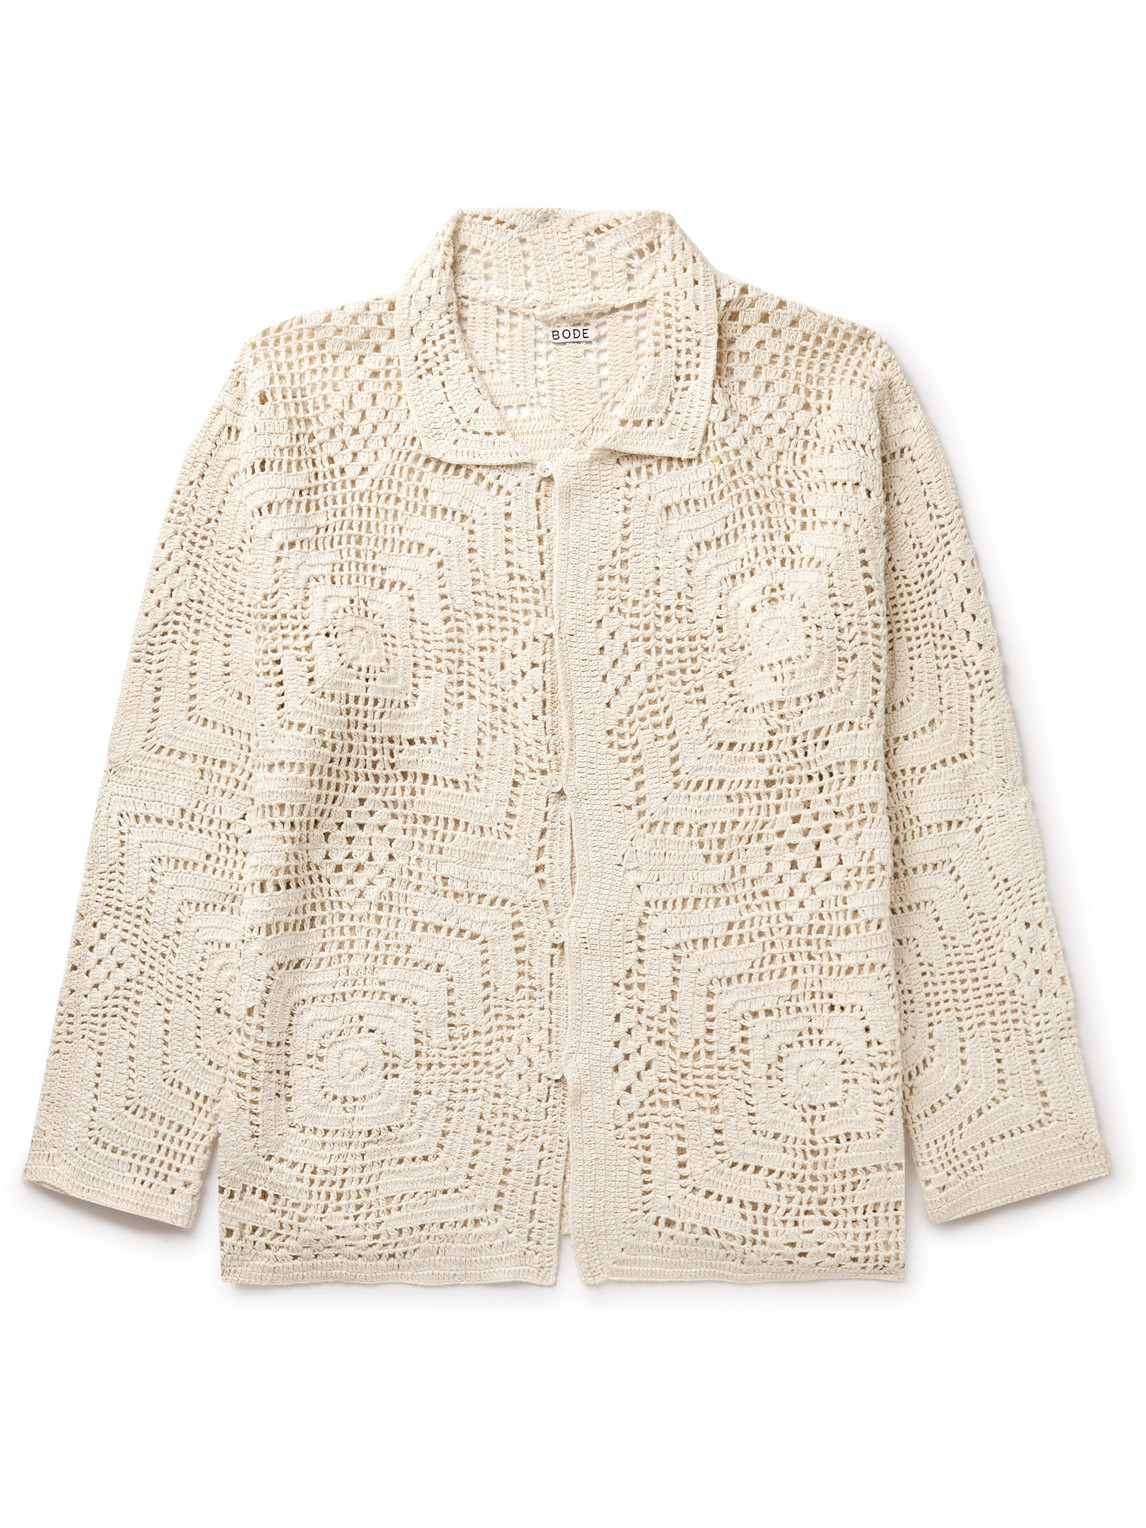 BODE - Crocheted Cotton Shirt - Men - Neutrals - M von BODE